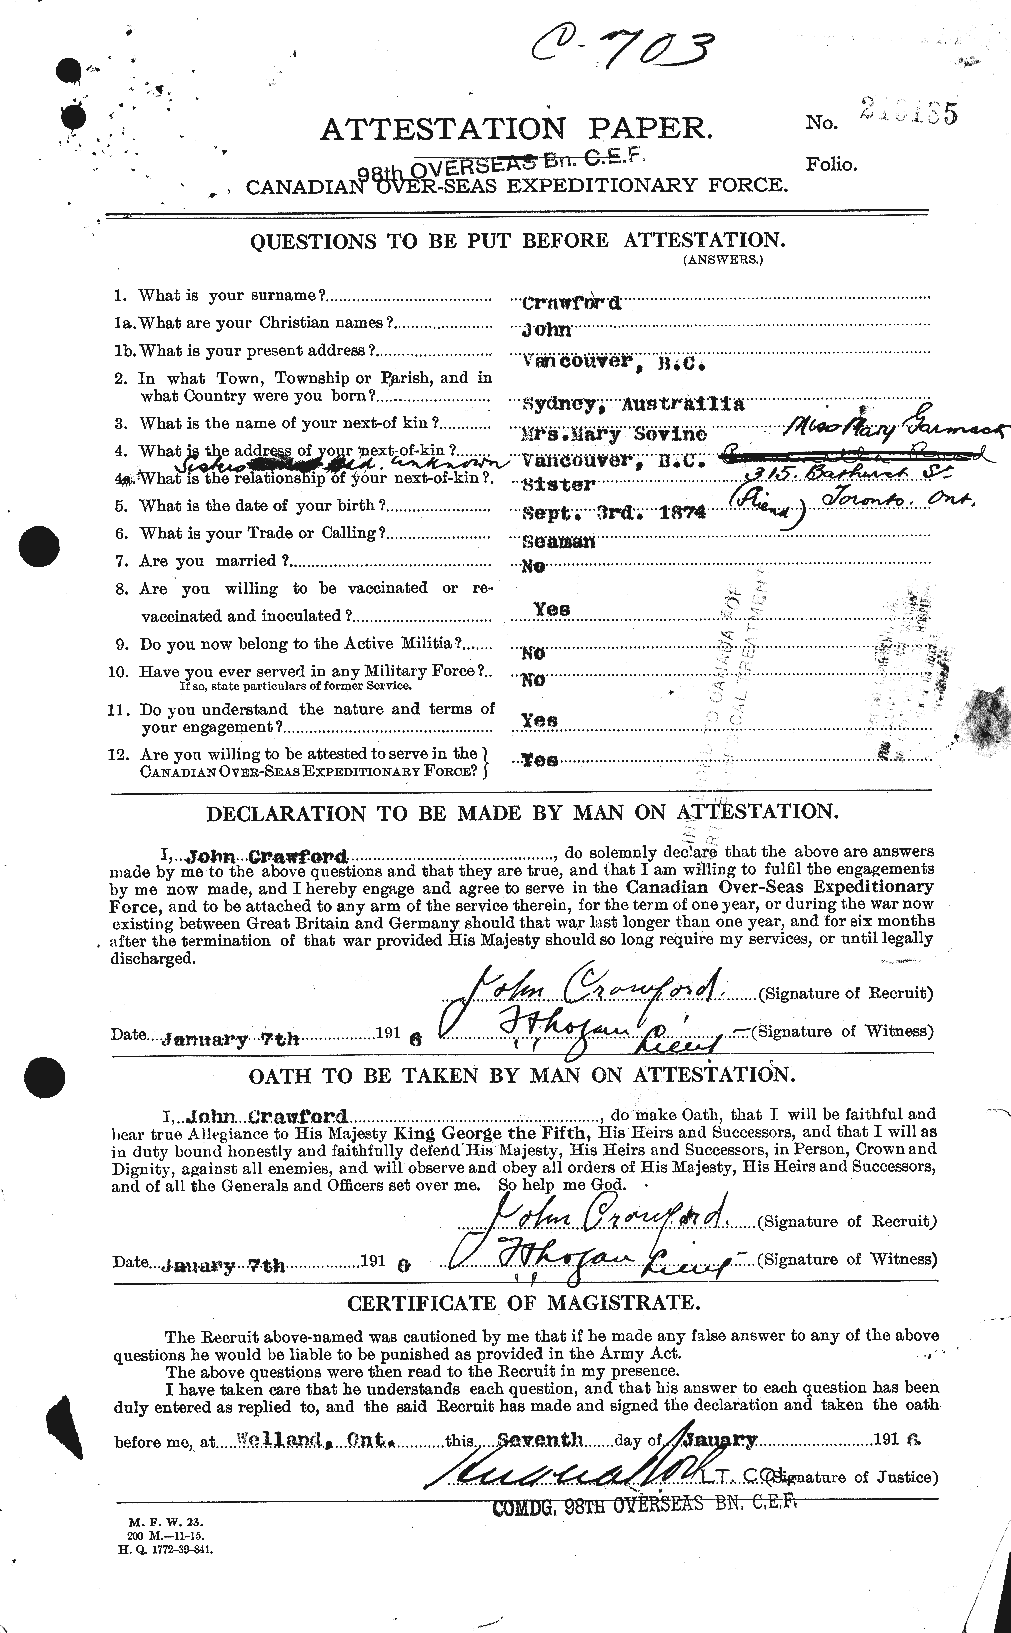 Dossiers du Personnel de la Première Guerre mondiale - CEC 062446a